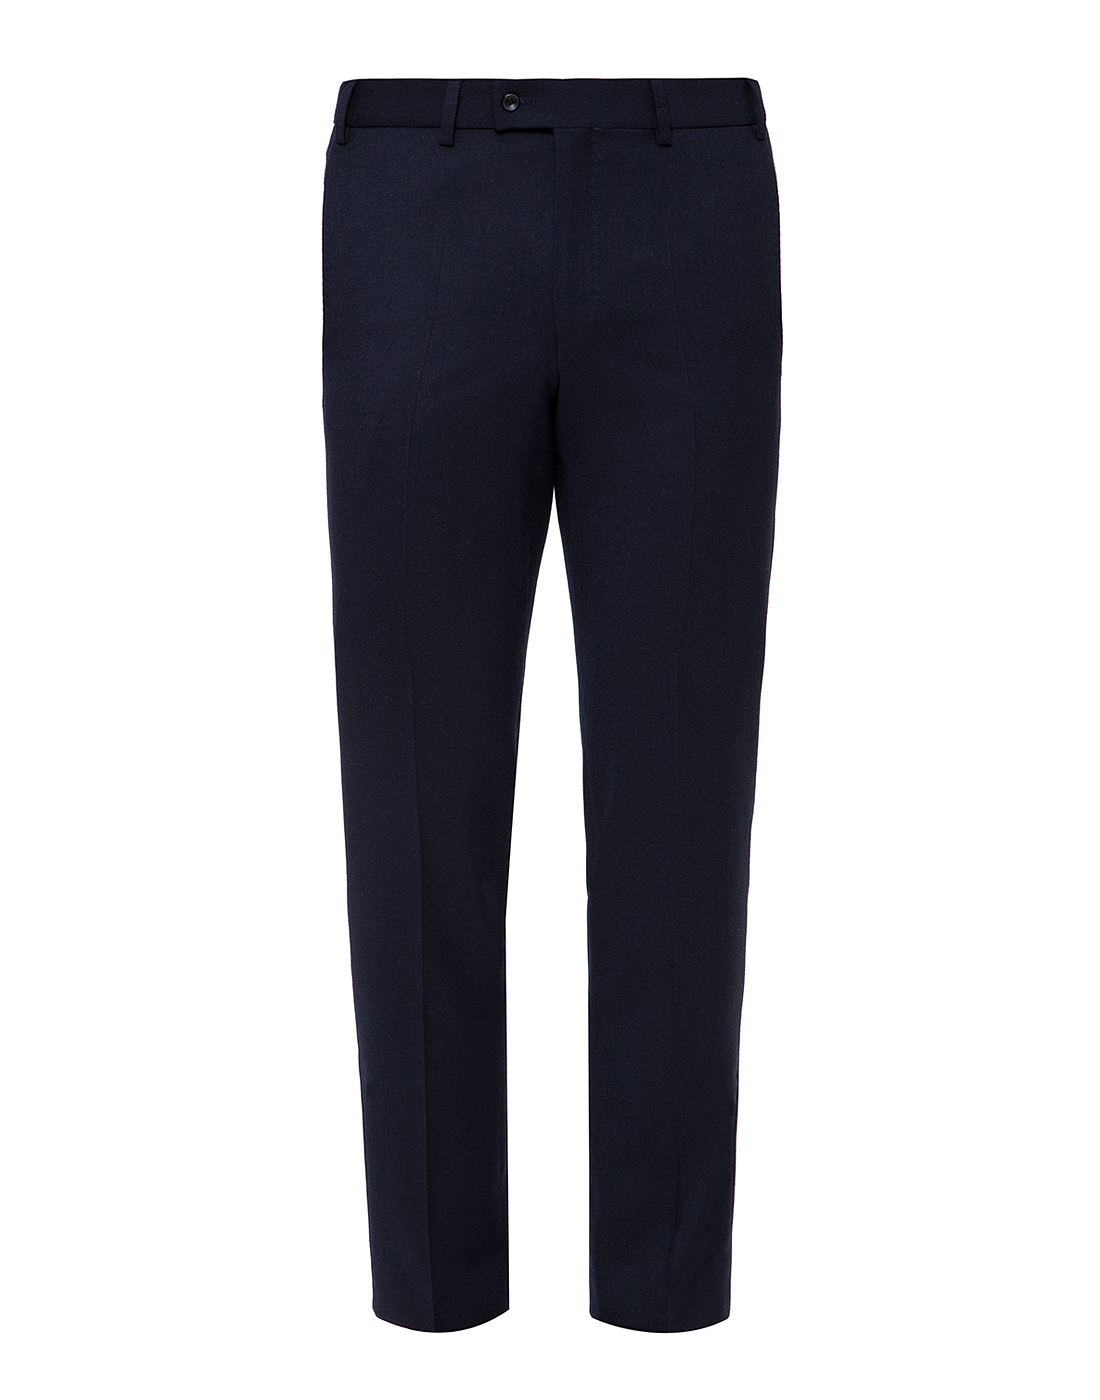 Мужские темно-синие шерстяные брюки Hiltl  S42200 40 34600-1